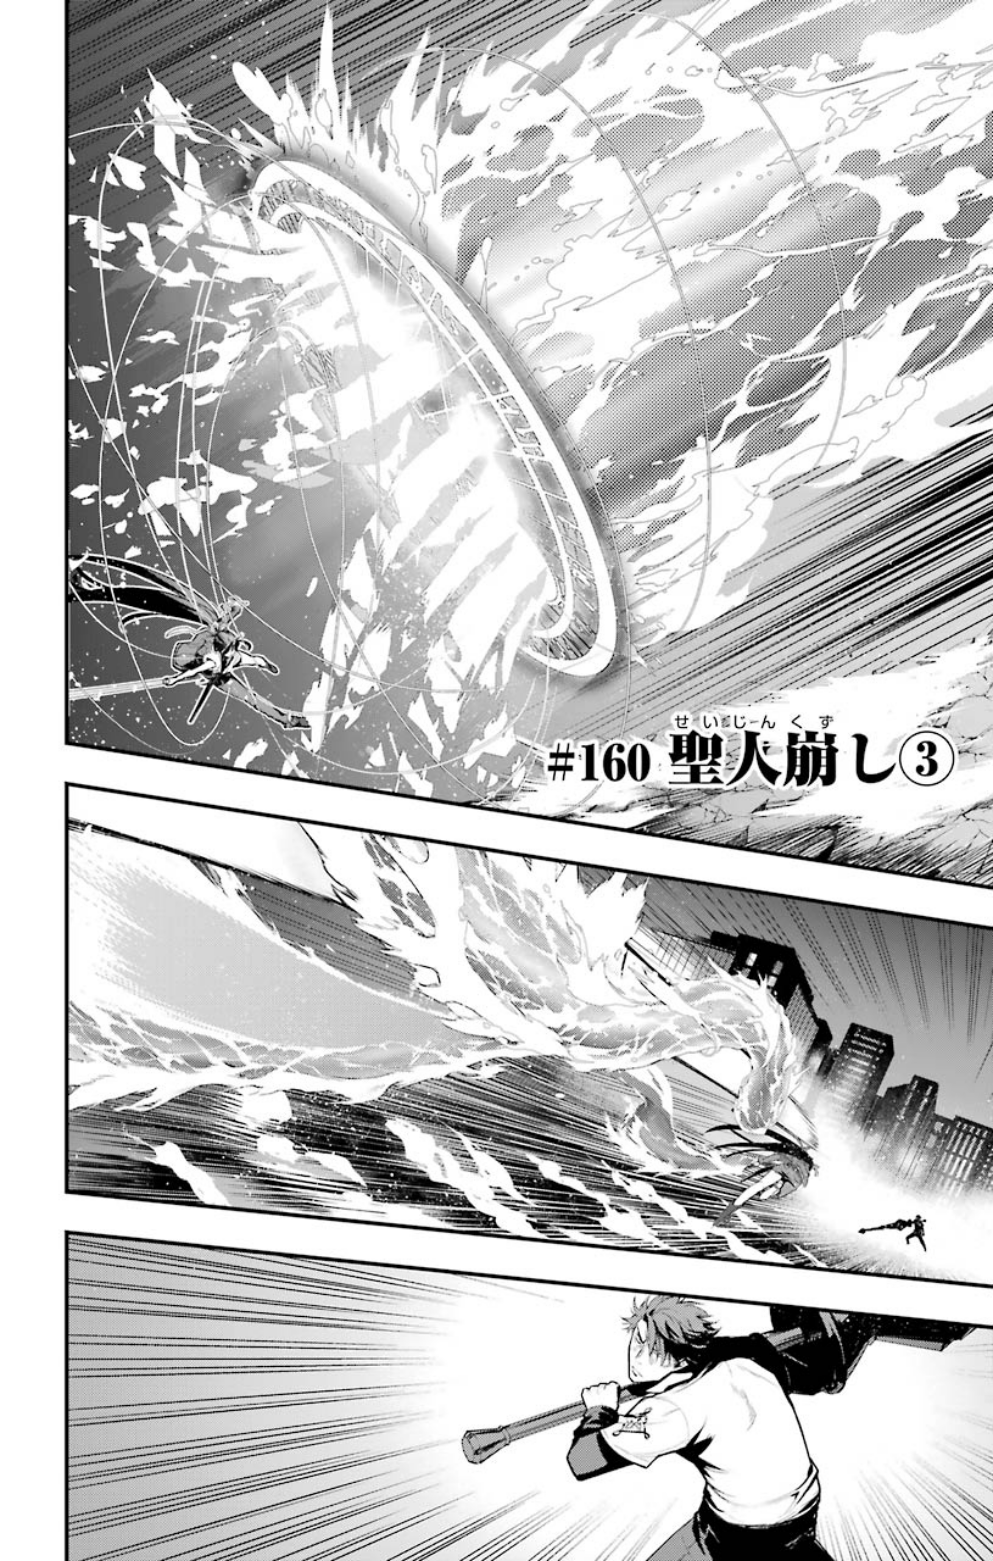 Toaru Kagaku no Accelerator (manga), Toaru Majutsu no Index Wiki